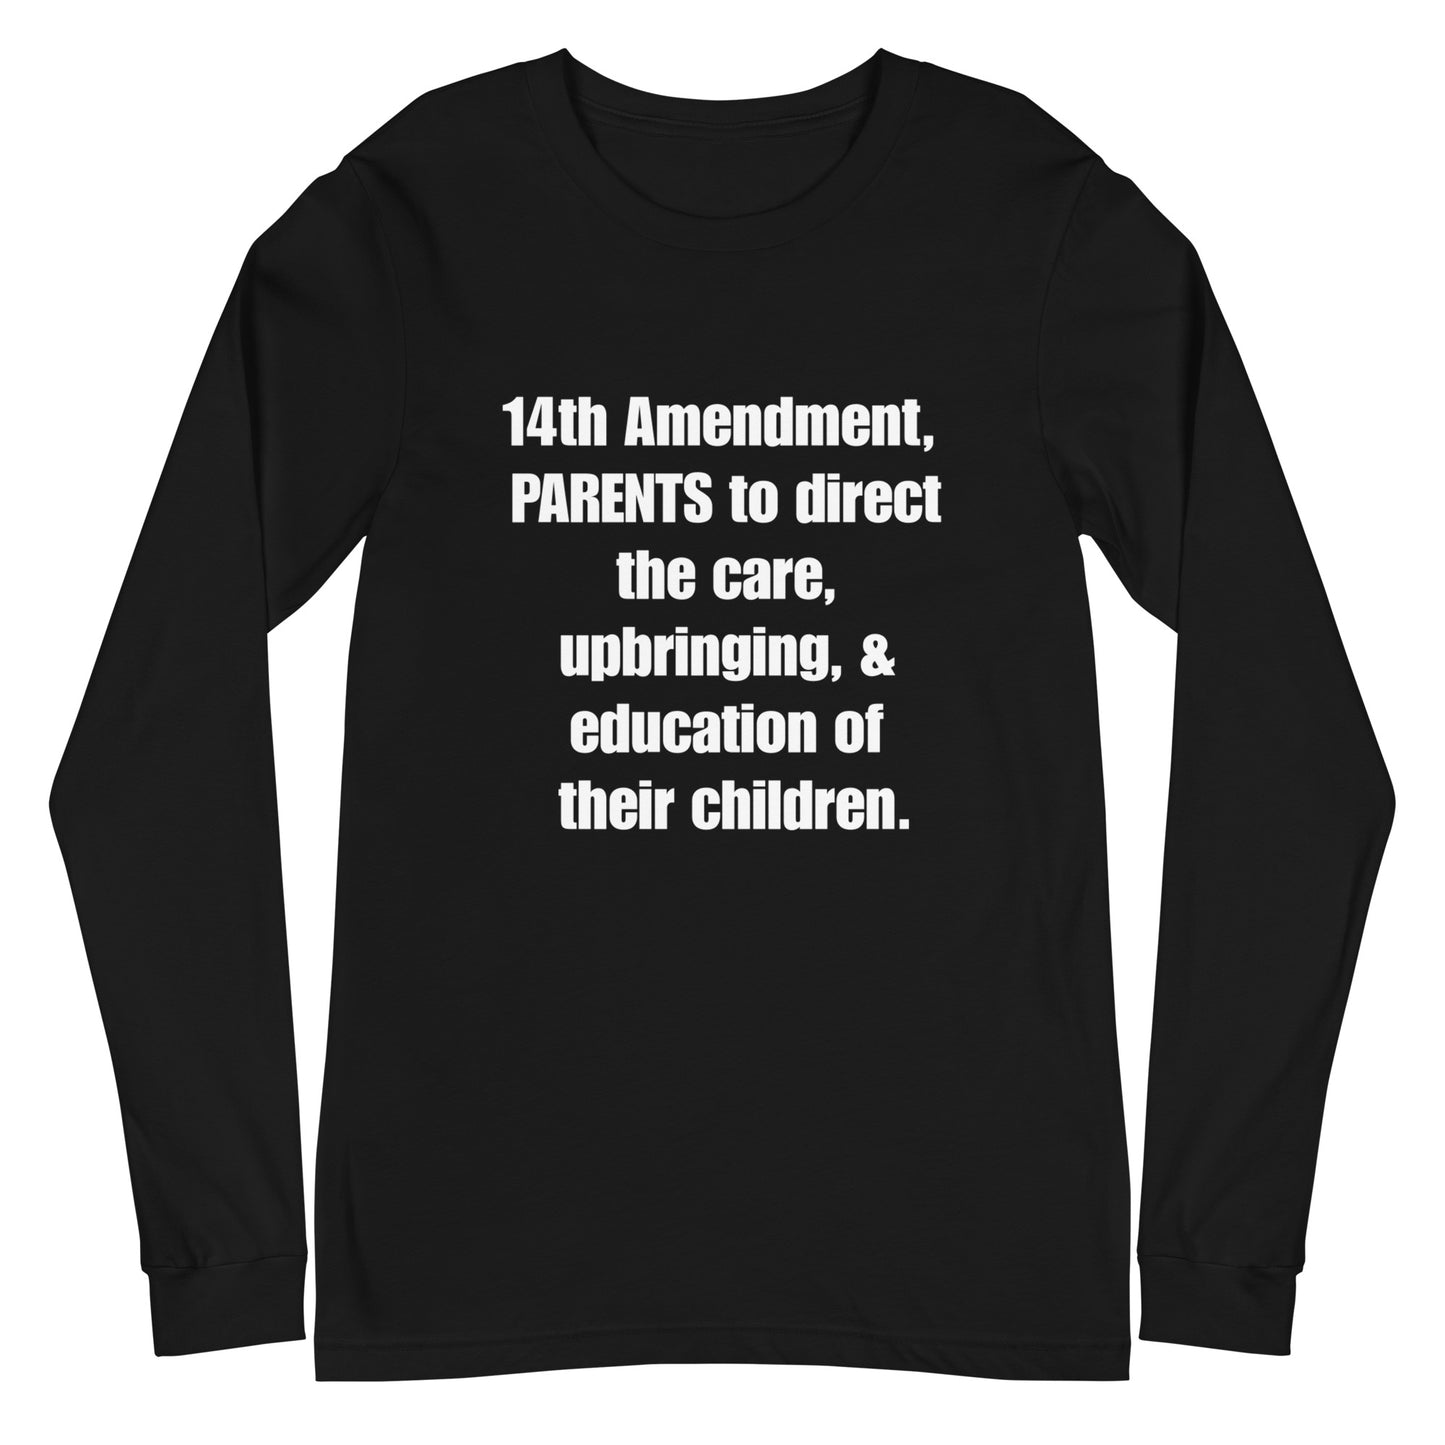 14th Amendment for Parents